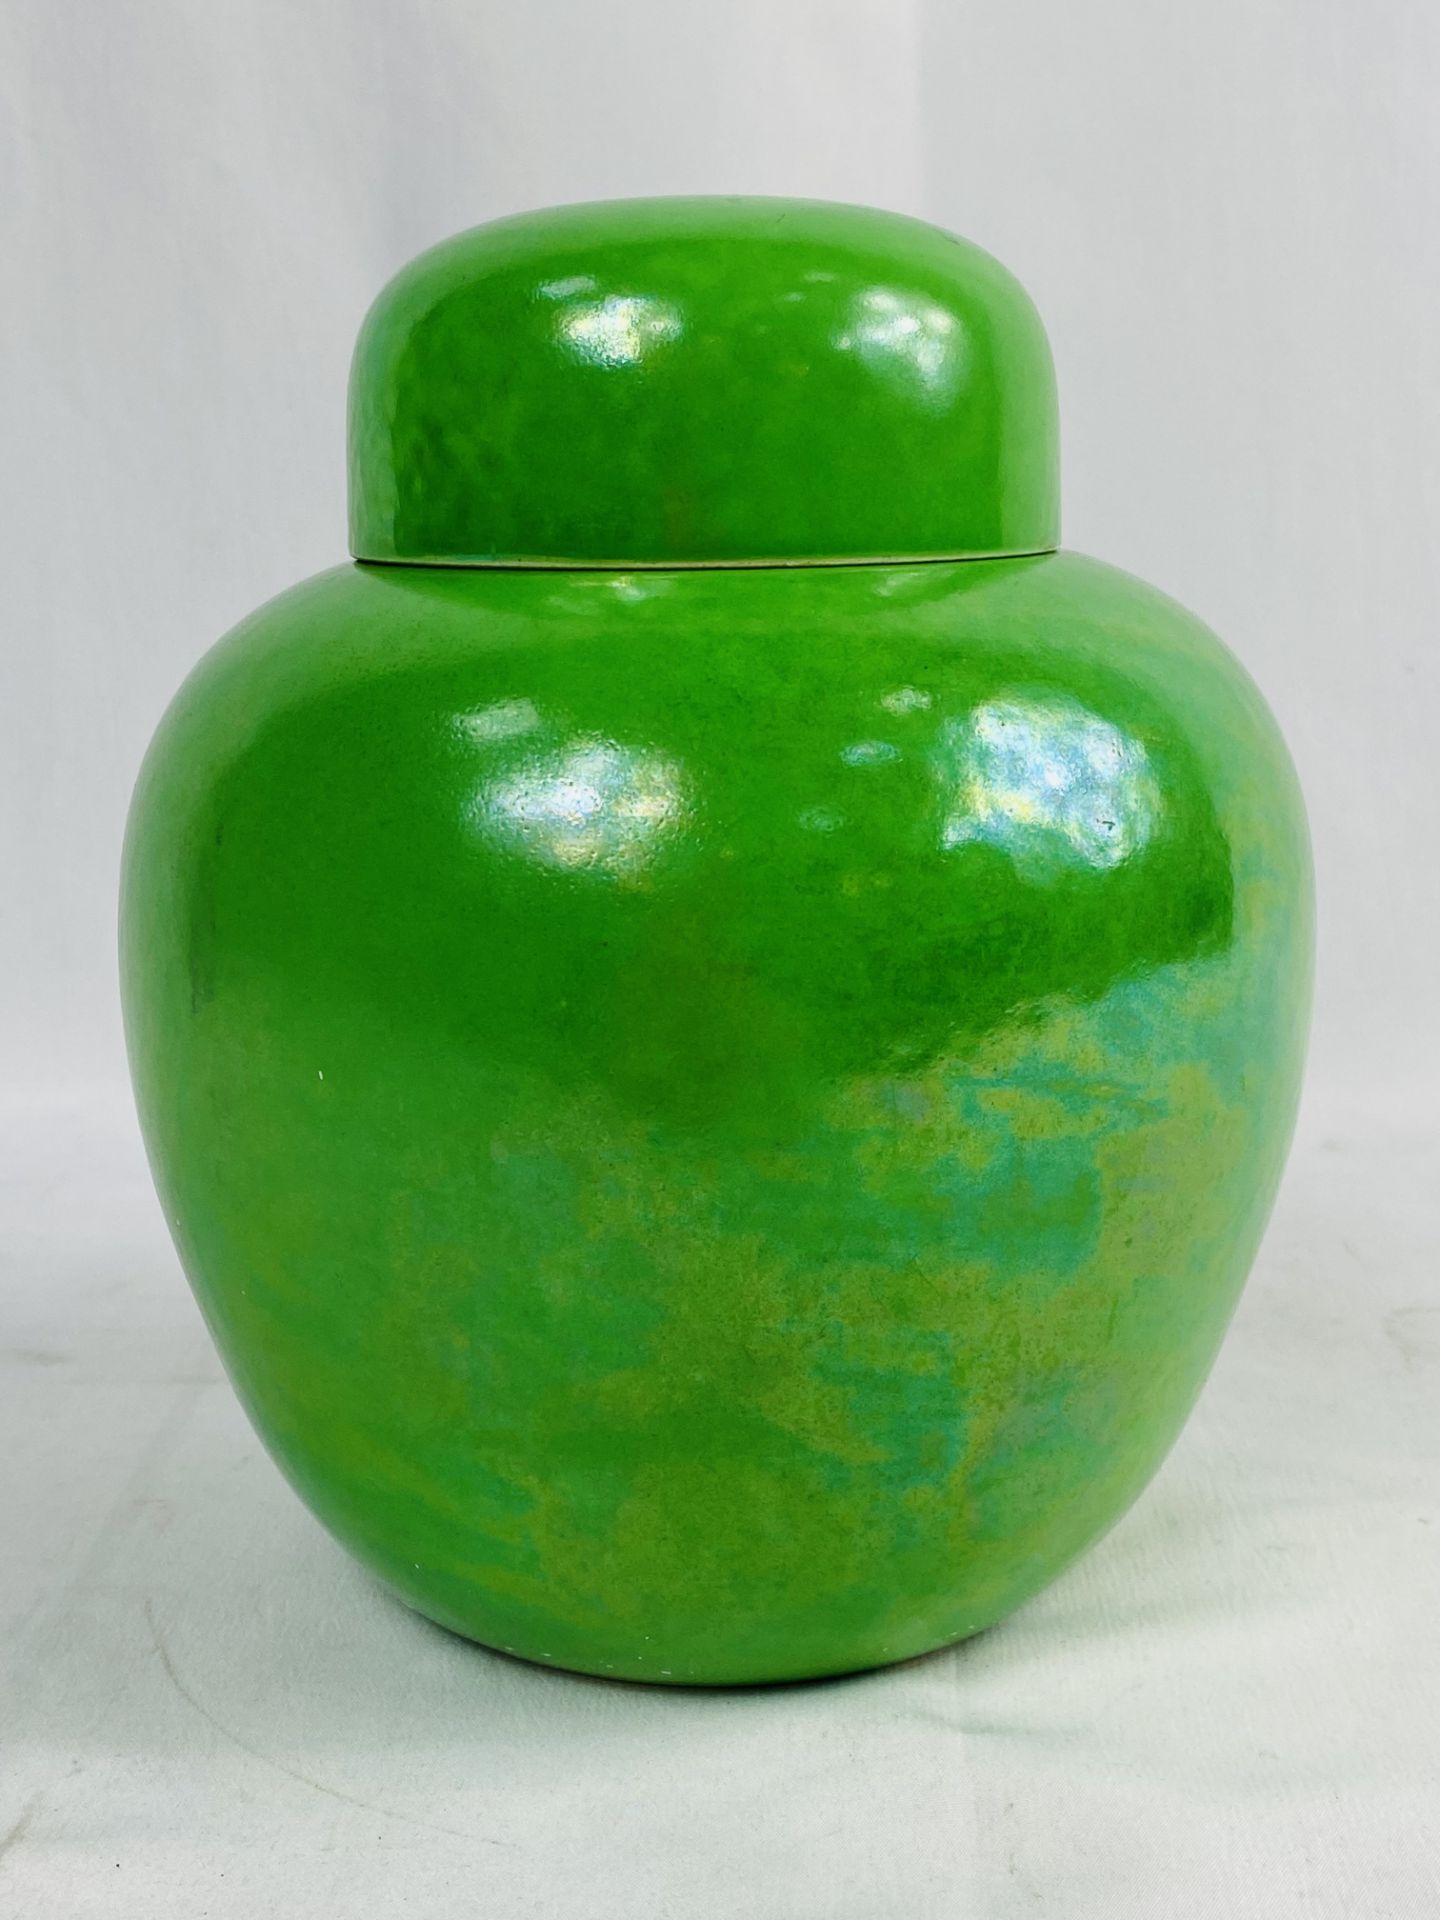 Ruskin ginger jar - Image 5 of 5